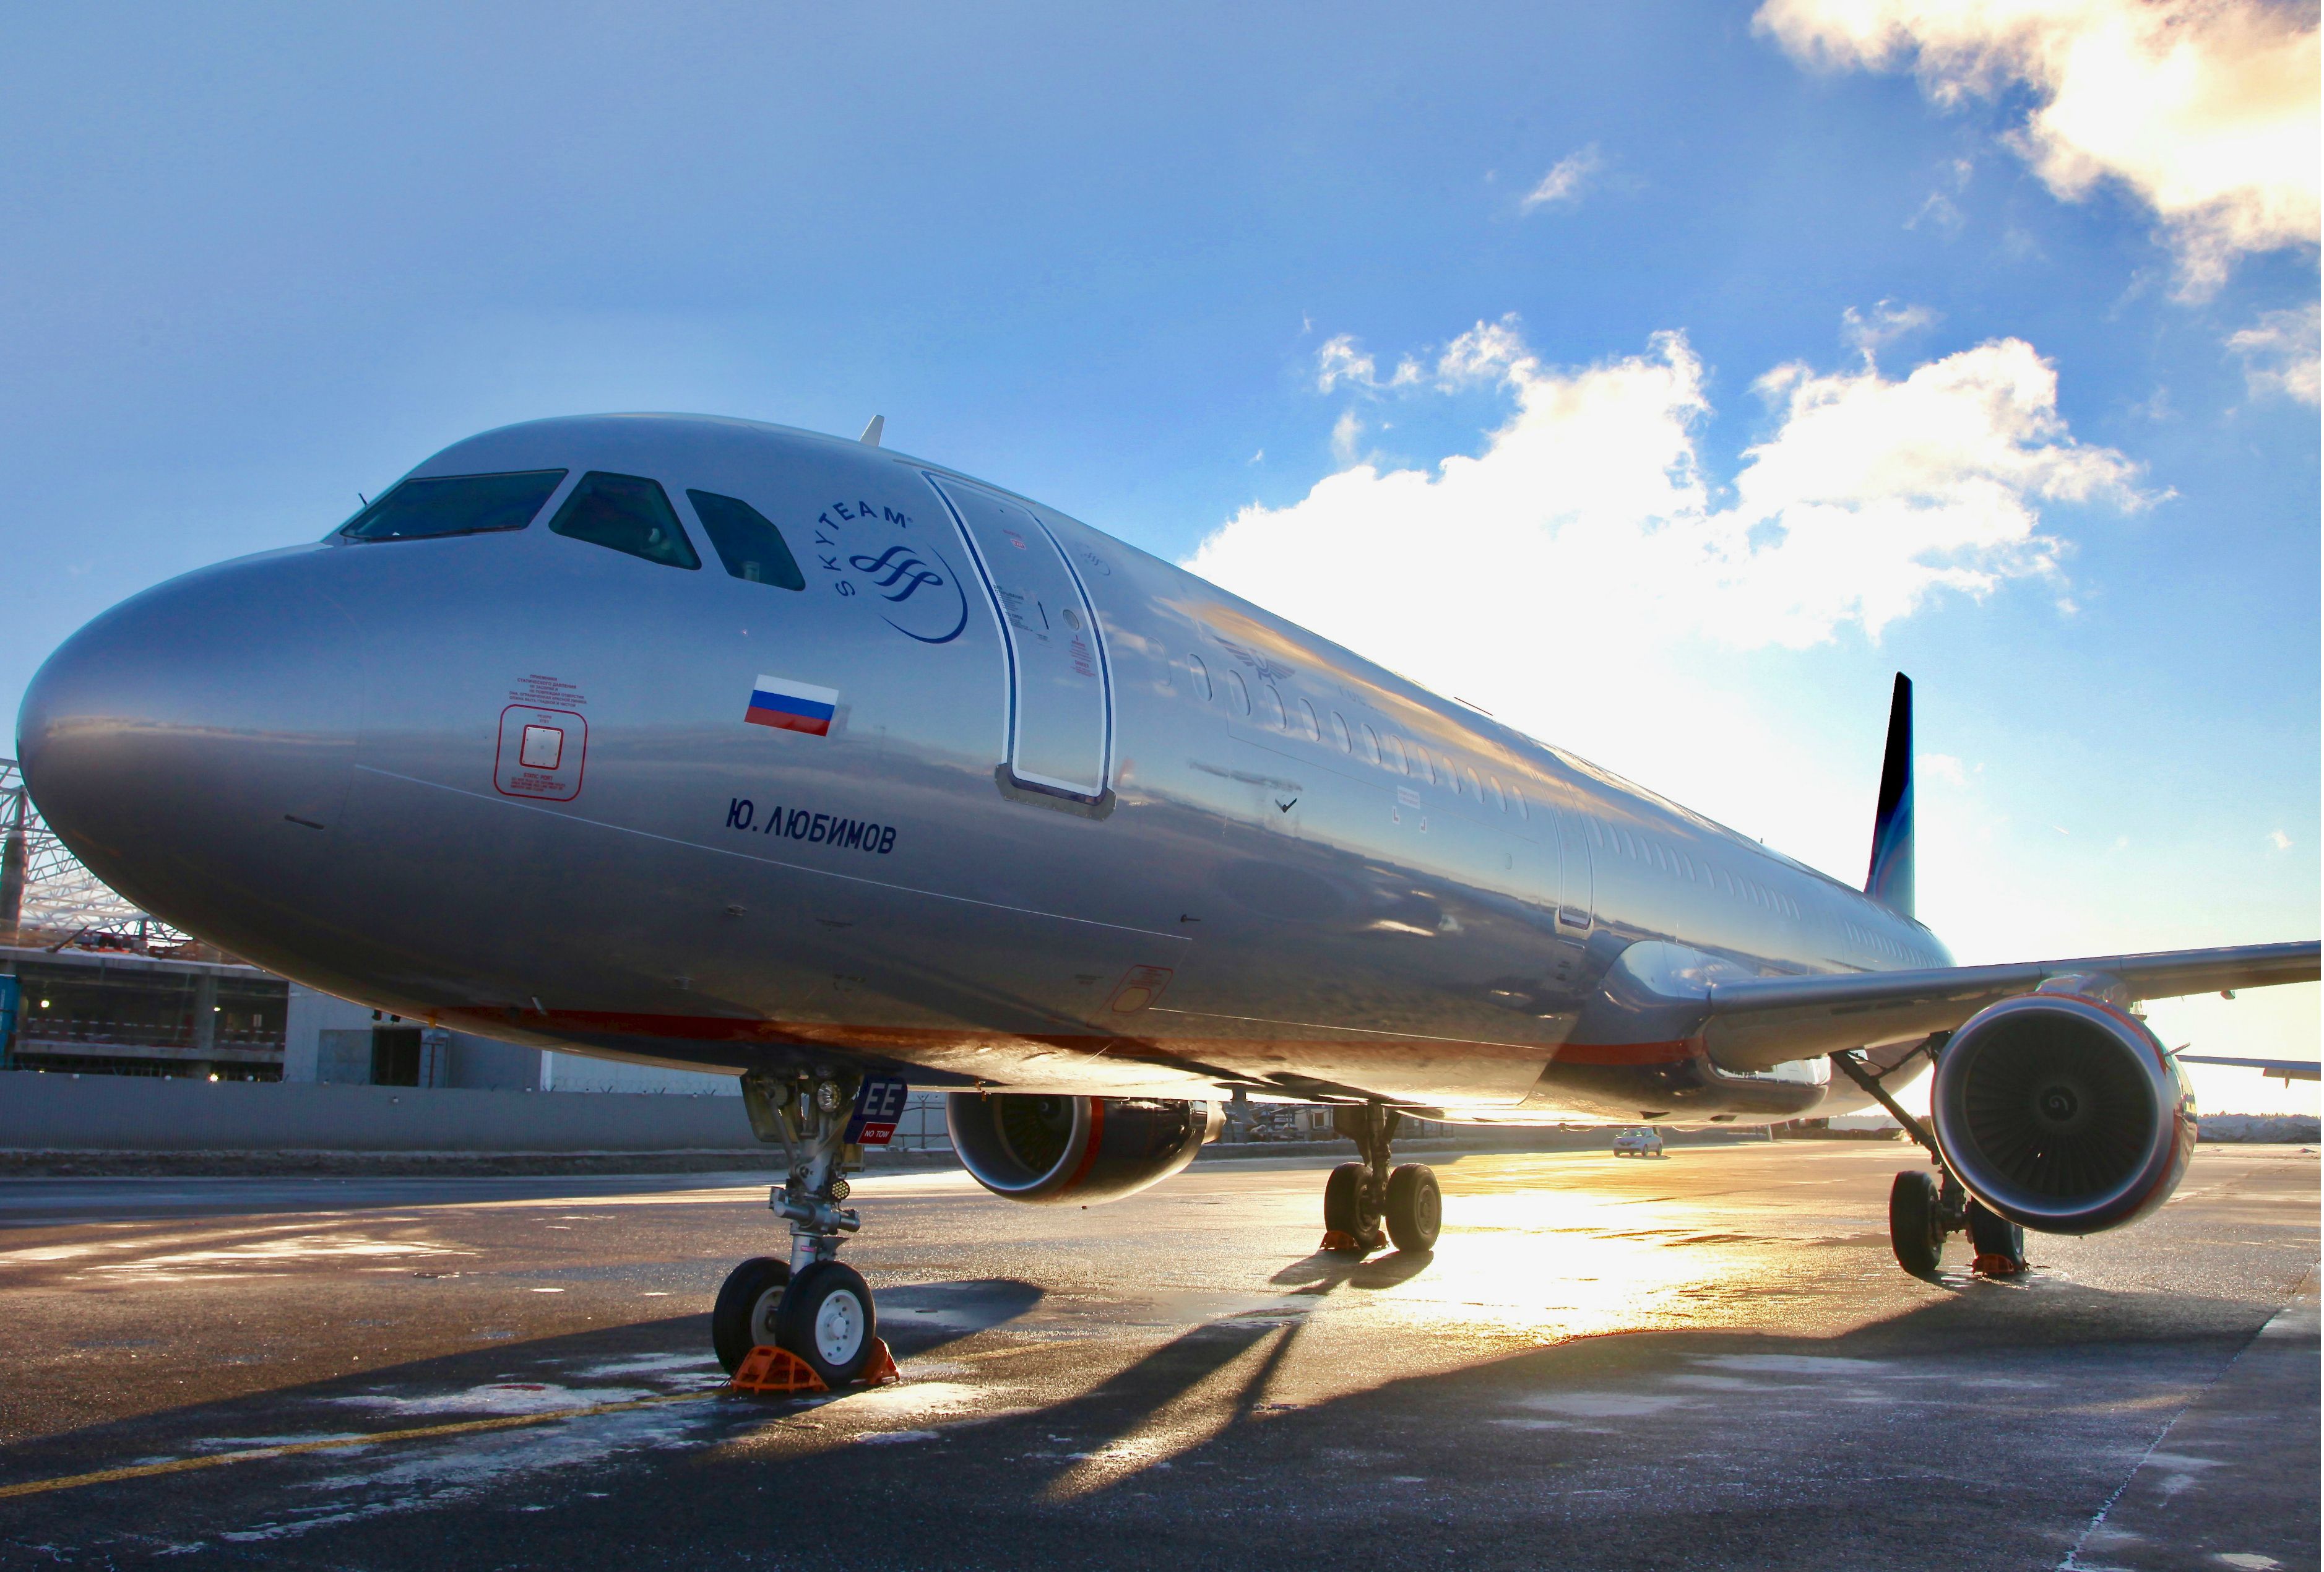 Aeroflot A321